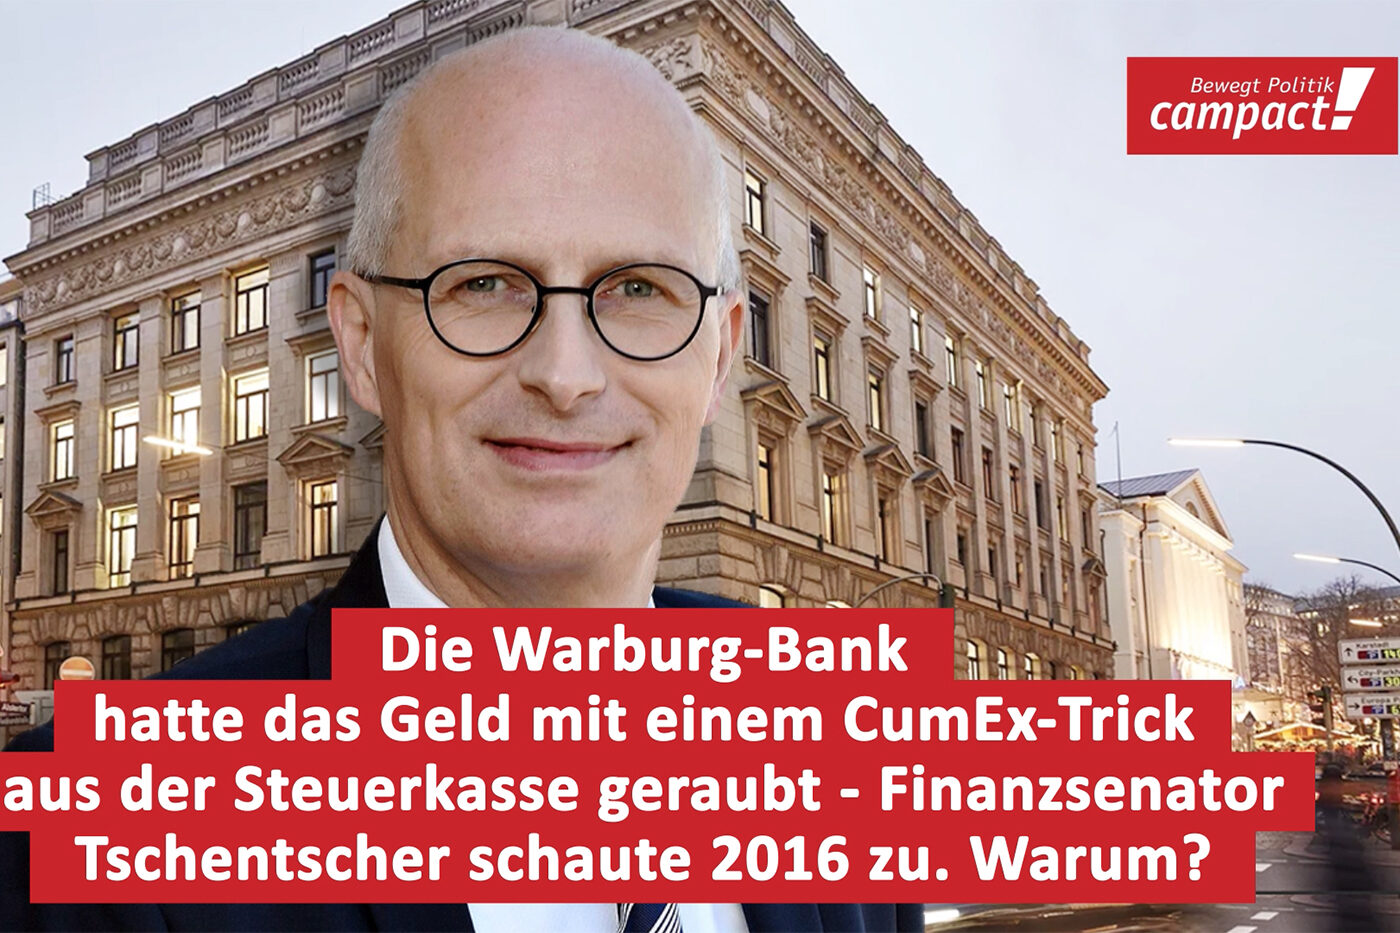 Die Warburg-Bank hatte das Geld mit einem CumEx-Trick aus der Steuerkasse geraubt - Finanzsenator Tschentscher schaute 2016 zu. Warum?